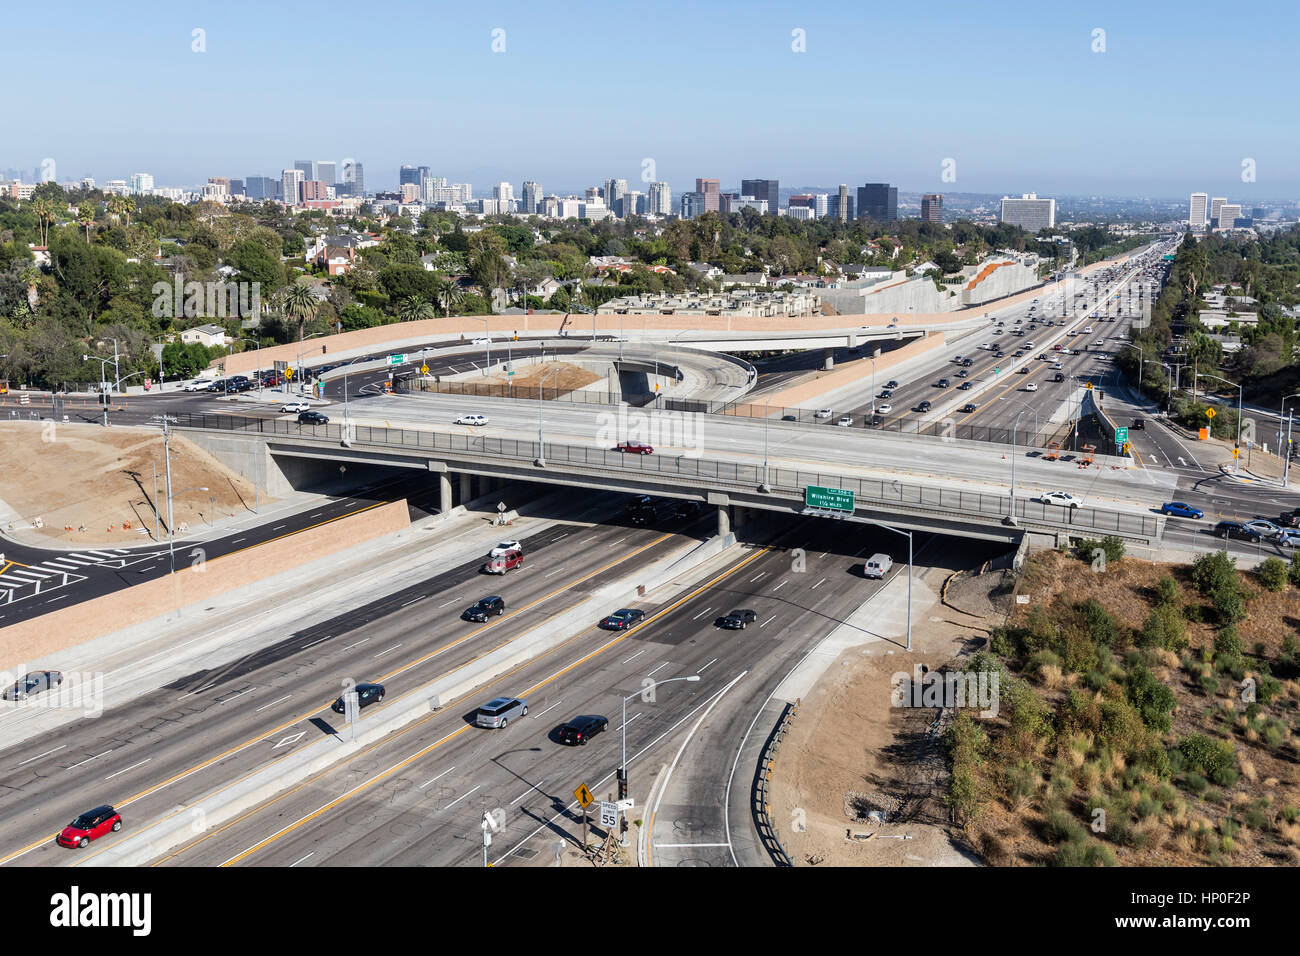 LOS ANGELES, CALIFORNIE - Le 17 août 2014 : Dimanche après-midi le trafic sur Los Angeles est occupé à San Diego 405 Freeway à Sunset Blvd. Banque D'Images